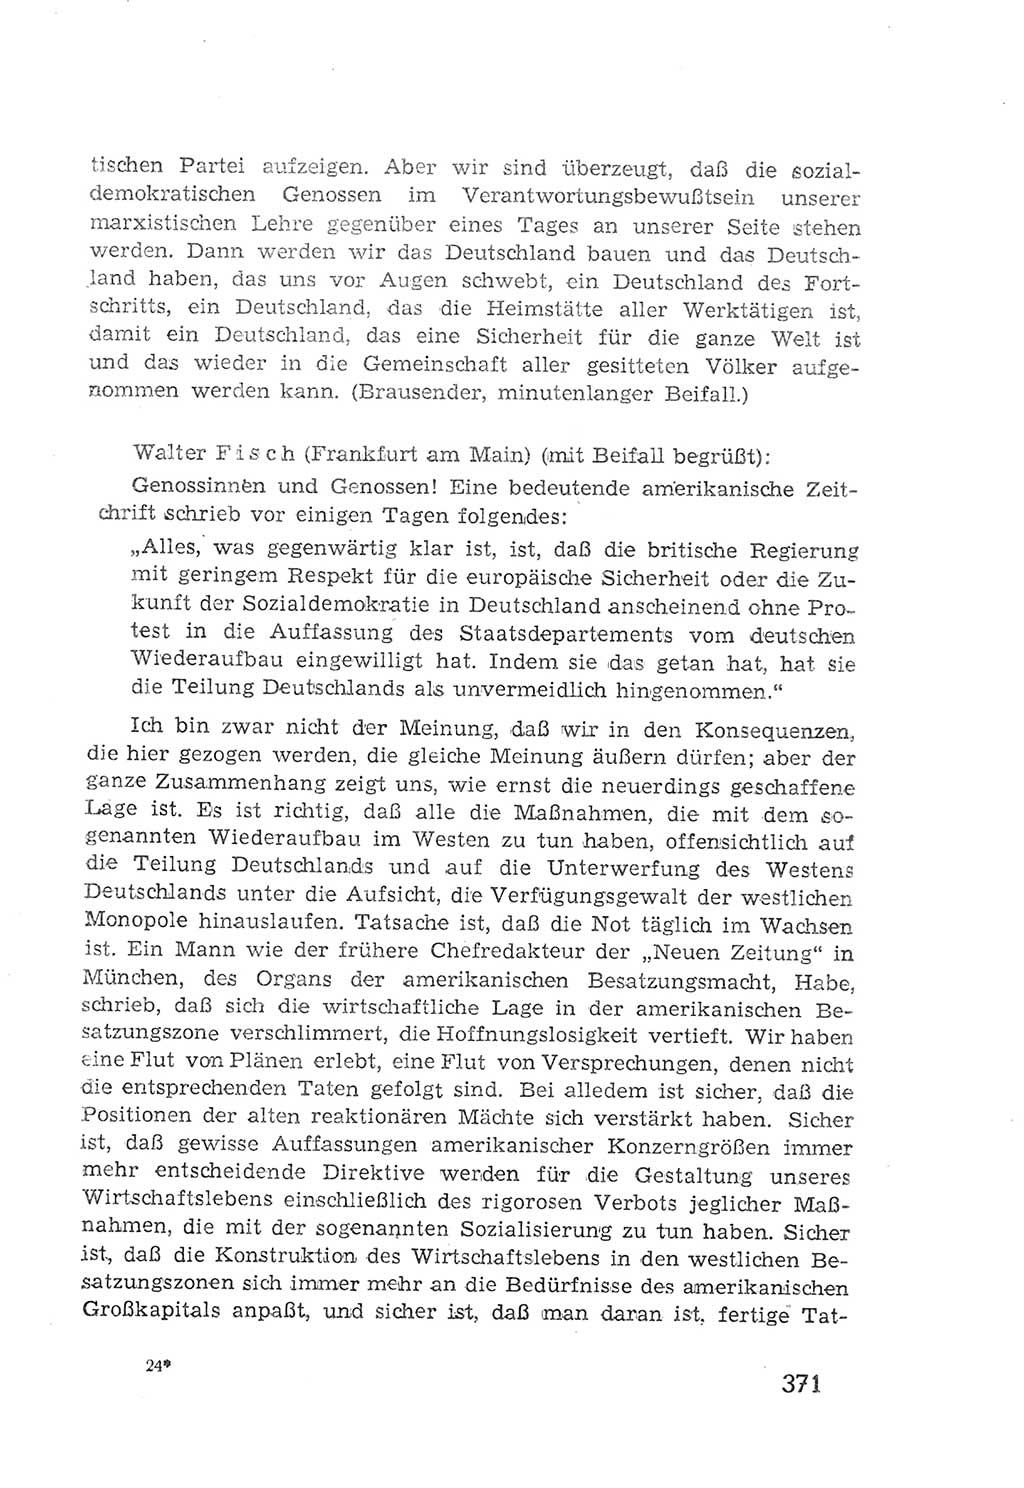 Protokoll der Verhandlungen des 2. Parteitages der Sozialistischen Einheitspartei Deutschlands (SED) [Sowjetische Besatzungszone (SBZ) Deutschlands] 1947, Seite 371 (Prot. Verh. 2. PT SED SBZ Dtl. 1947, S. 371)